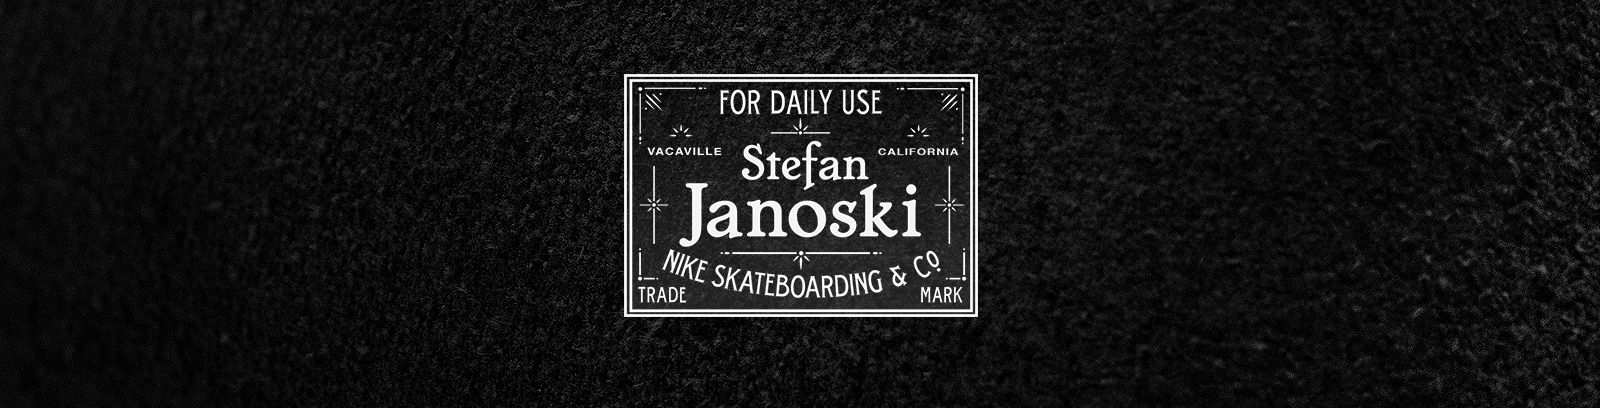 stefan janoski for daily use